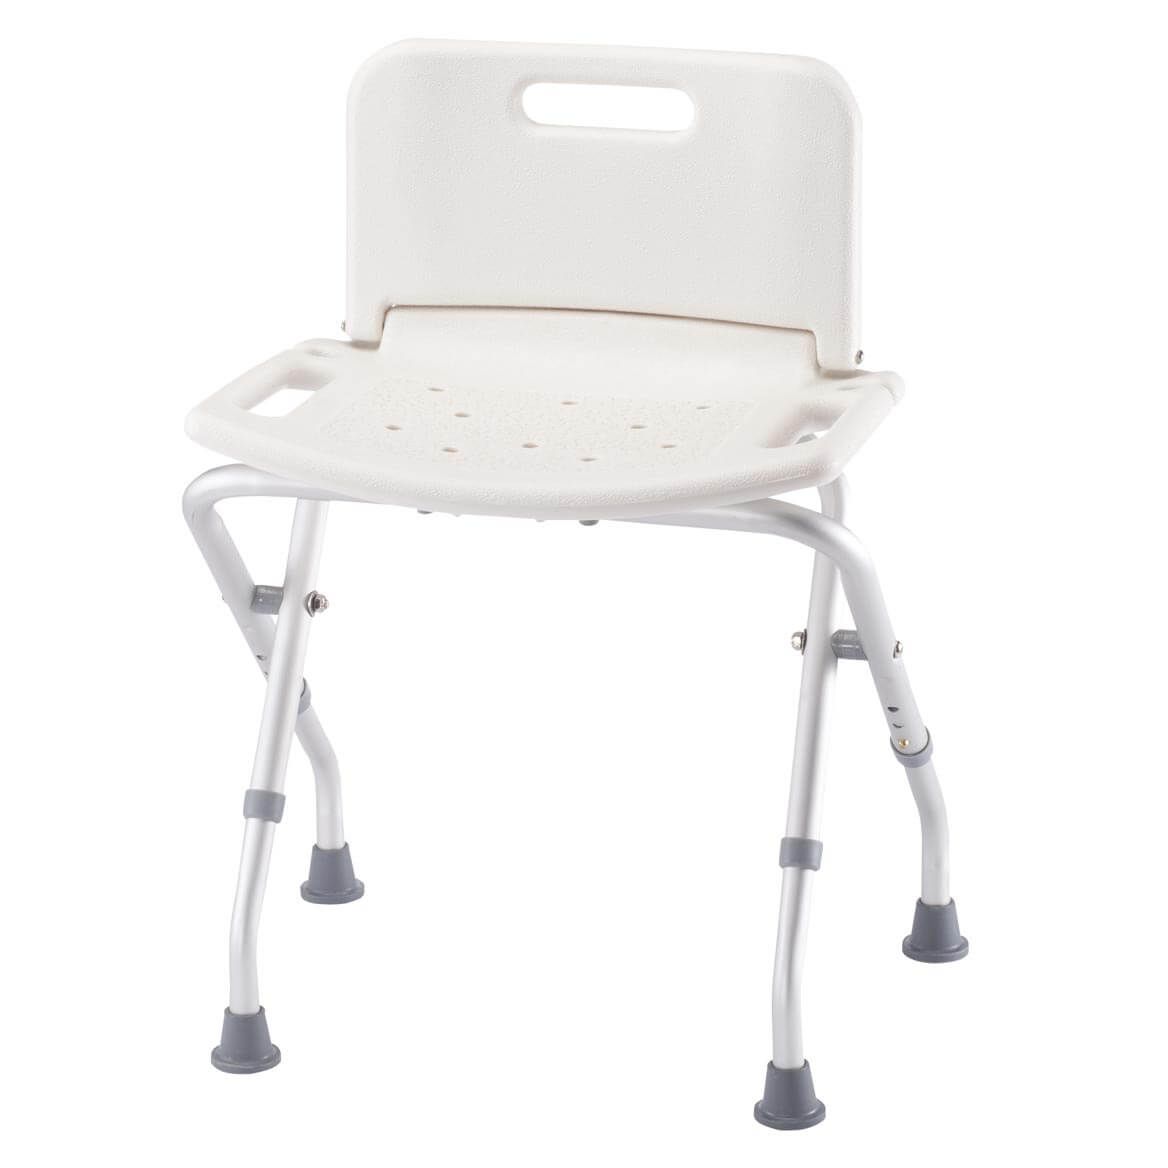 Folding Bath Seat with Back      XL + '-' + 358607